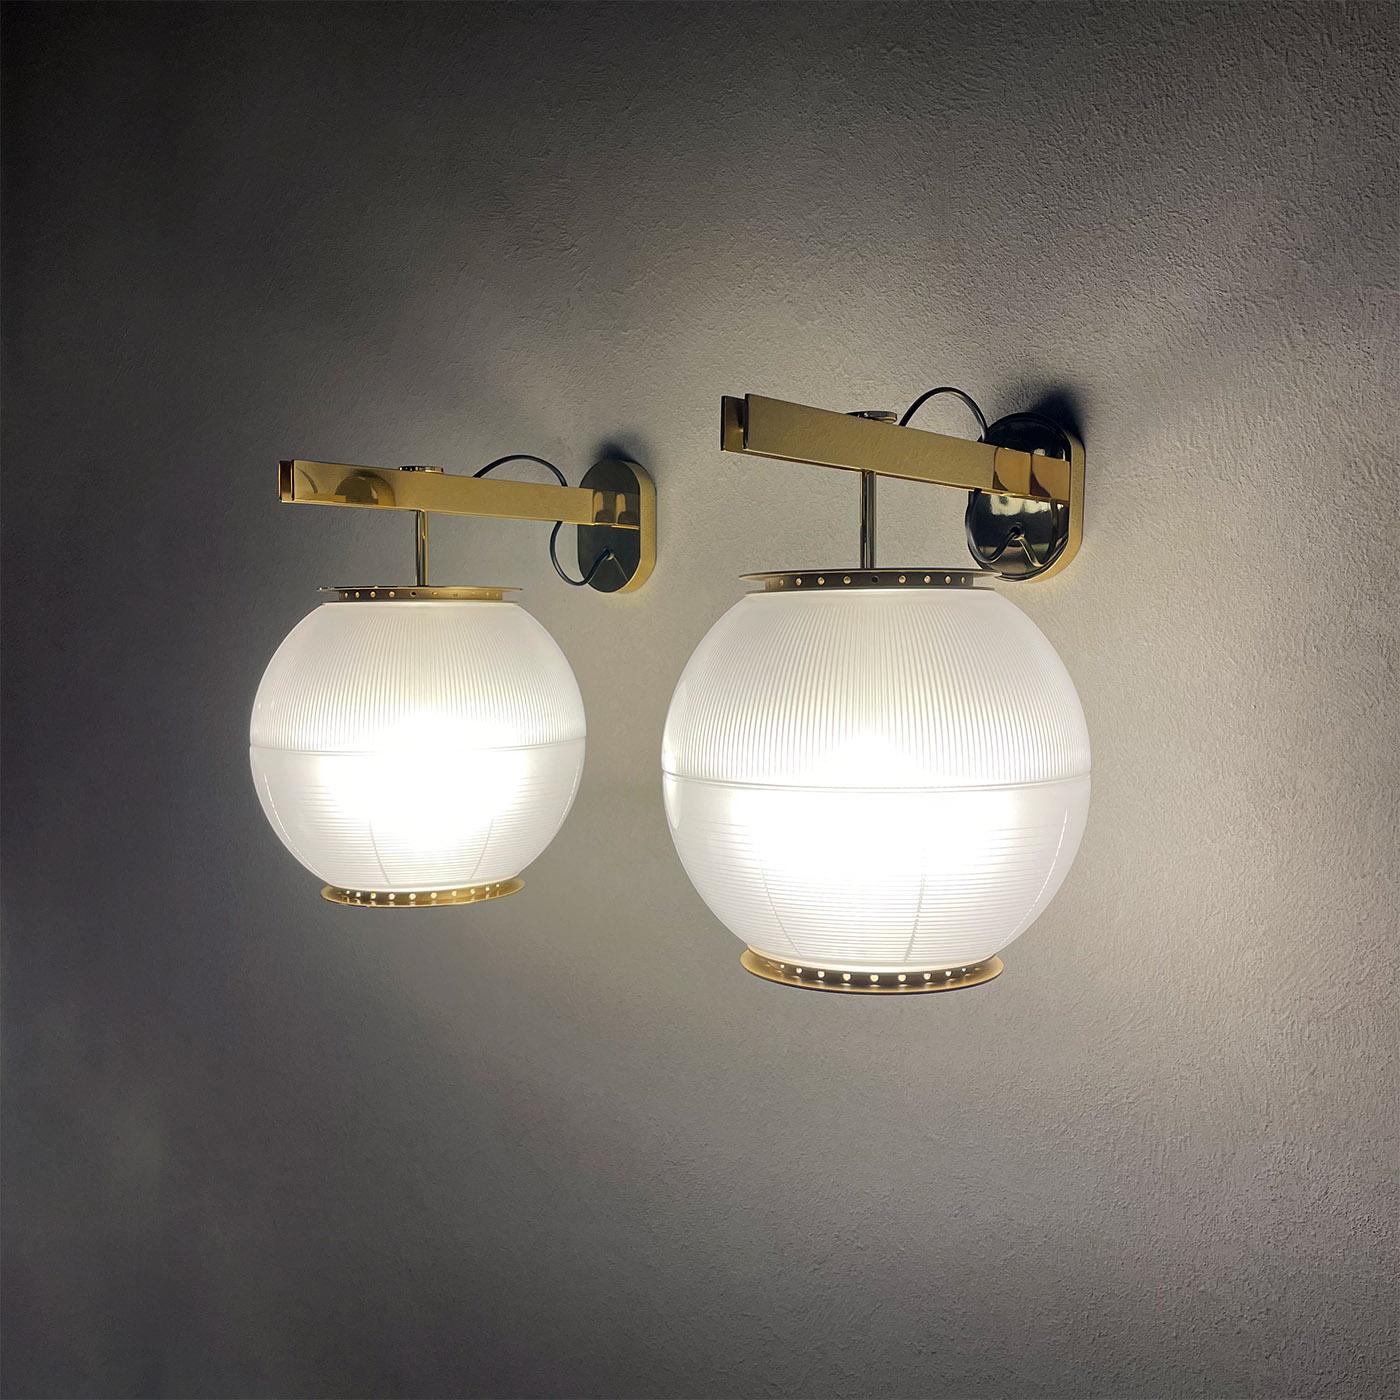 Diese außergewöhnliche, mit viel Liebe zum Detail gefertigte Leuchte gehört zu der von Ignazio Gardella entworfenen Leuchtenserie Doppio Vetro. Sie zeichnet sich durch zwei halbkugelförmige Schirme aus bedrucktem Glas aus, die innen satiniert und